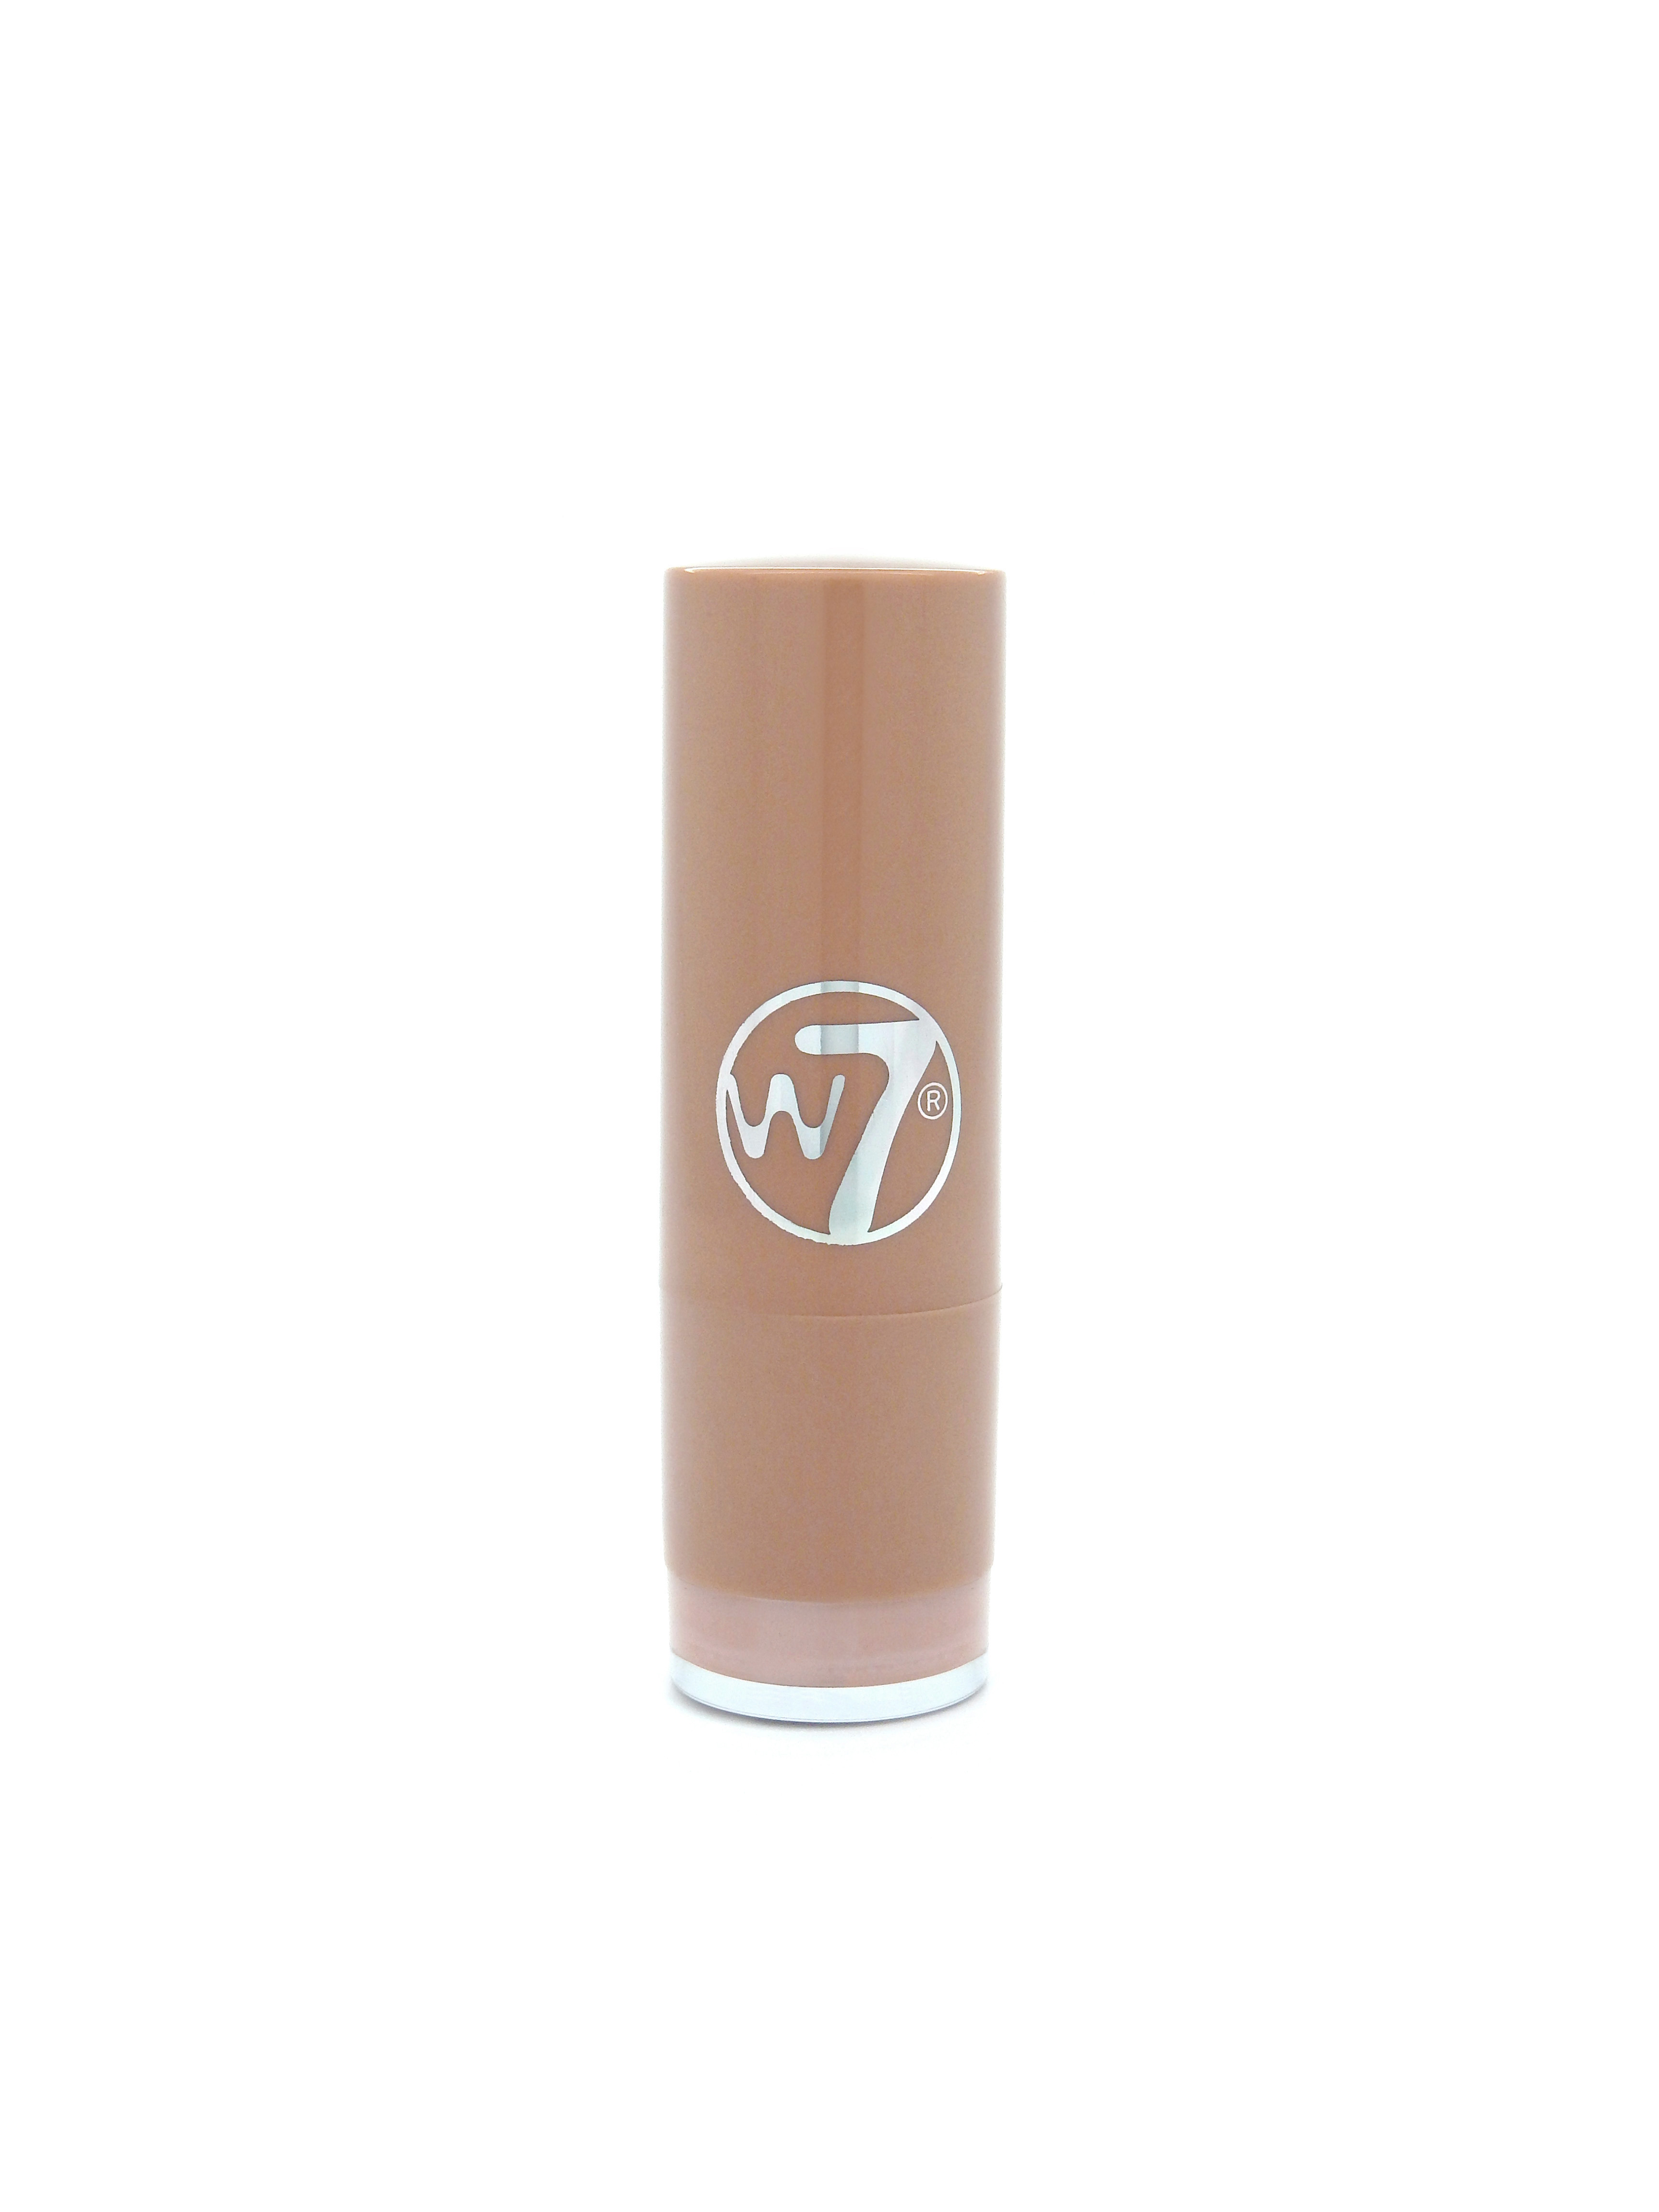 W7 Fashion Lipstick The Nudes - Cashmere [CLONE]